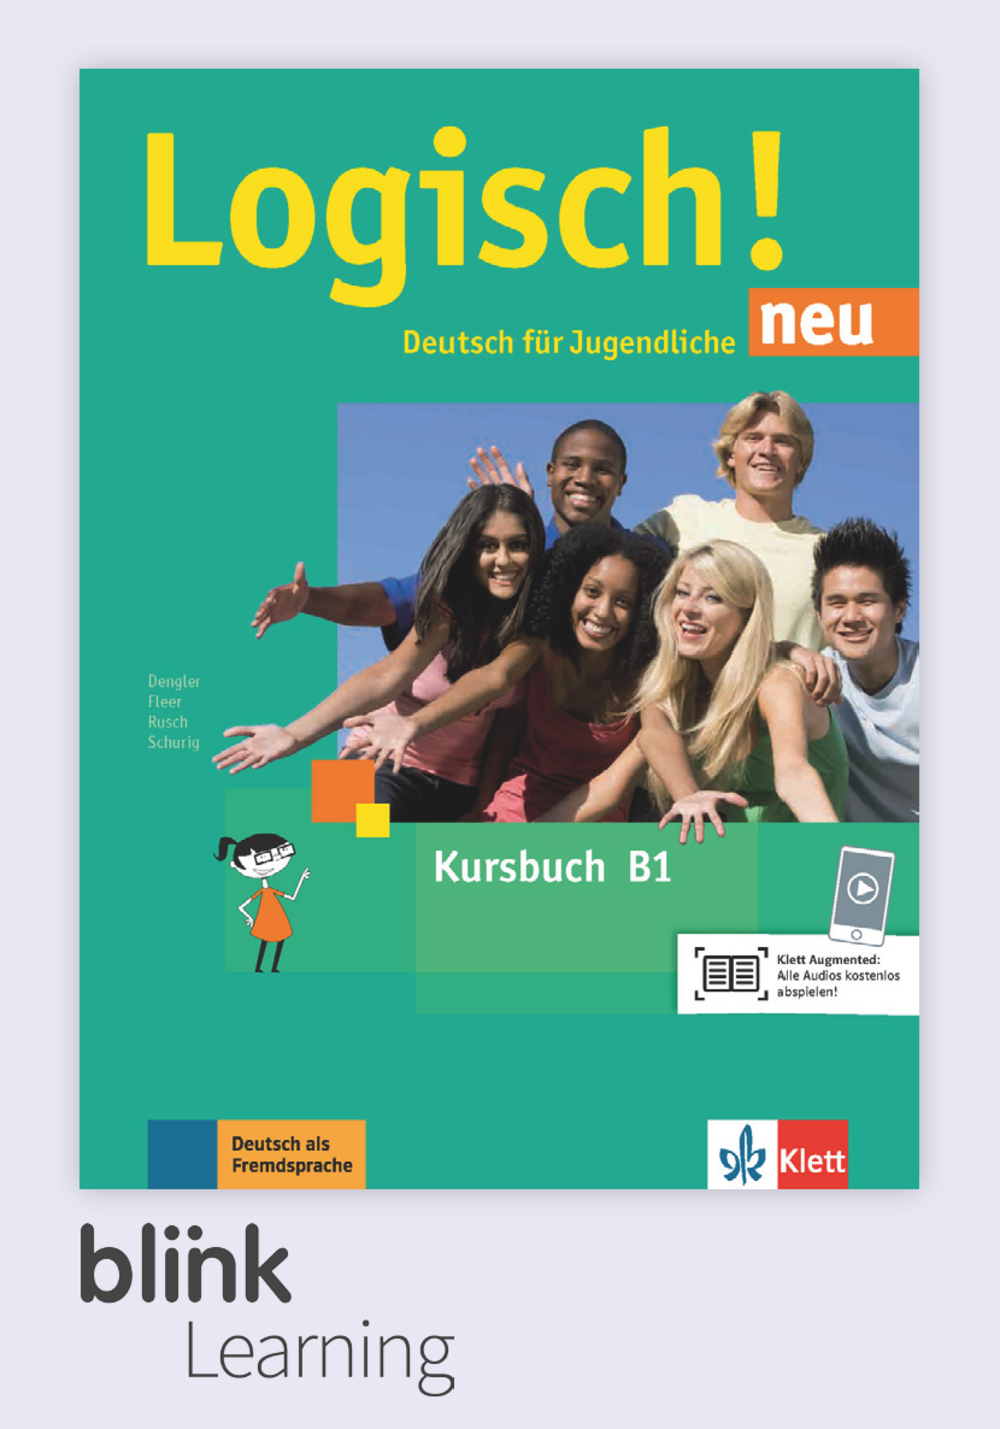 Logisch! NEU B1 Digital Kursbuch für Unterrichtende/ Цифровой учебник для учителя